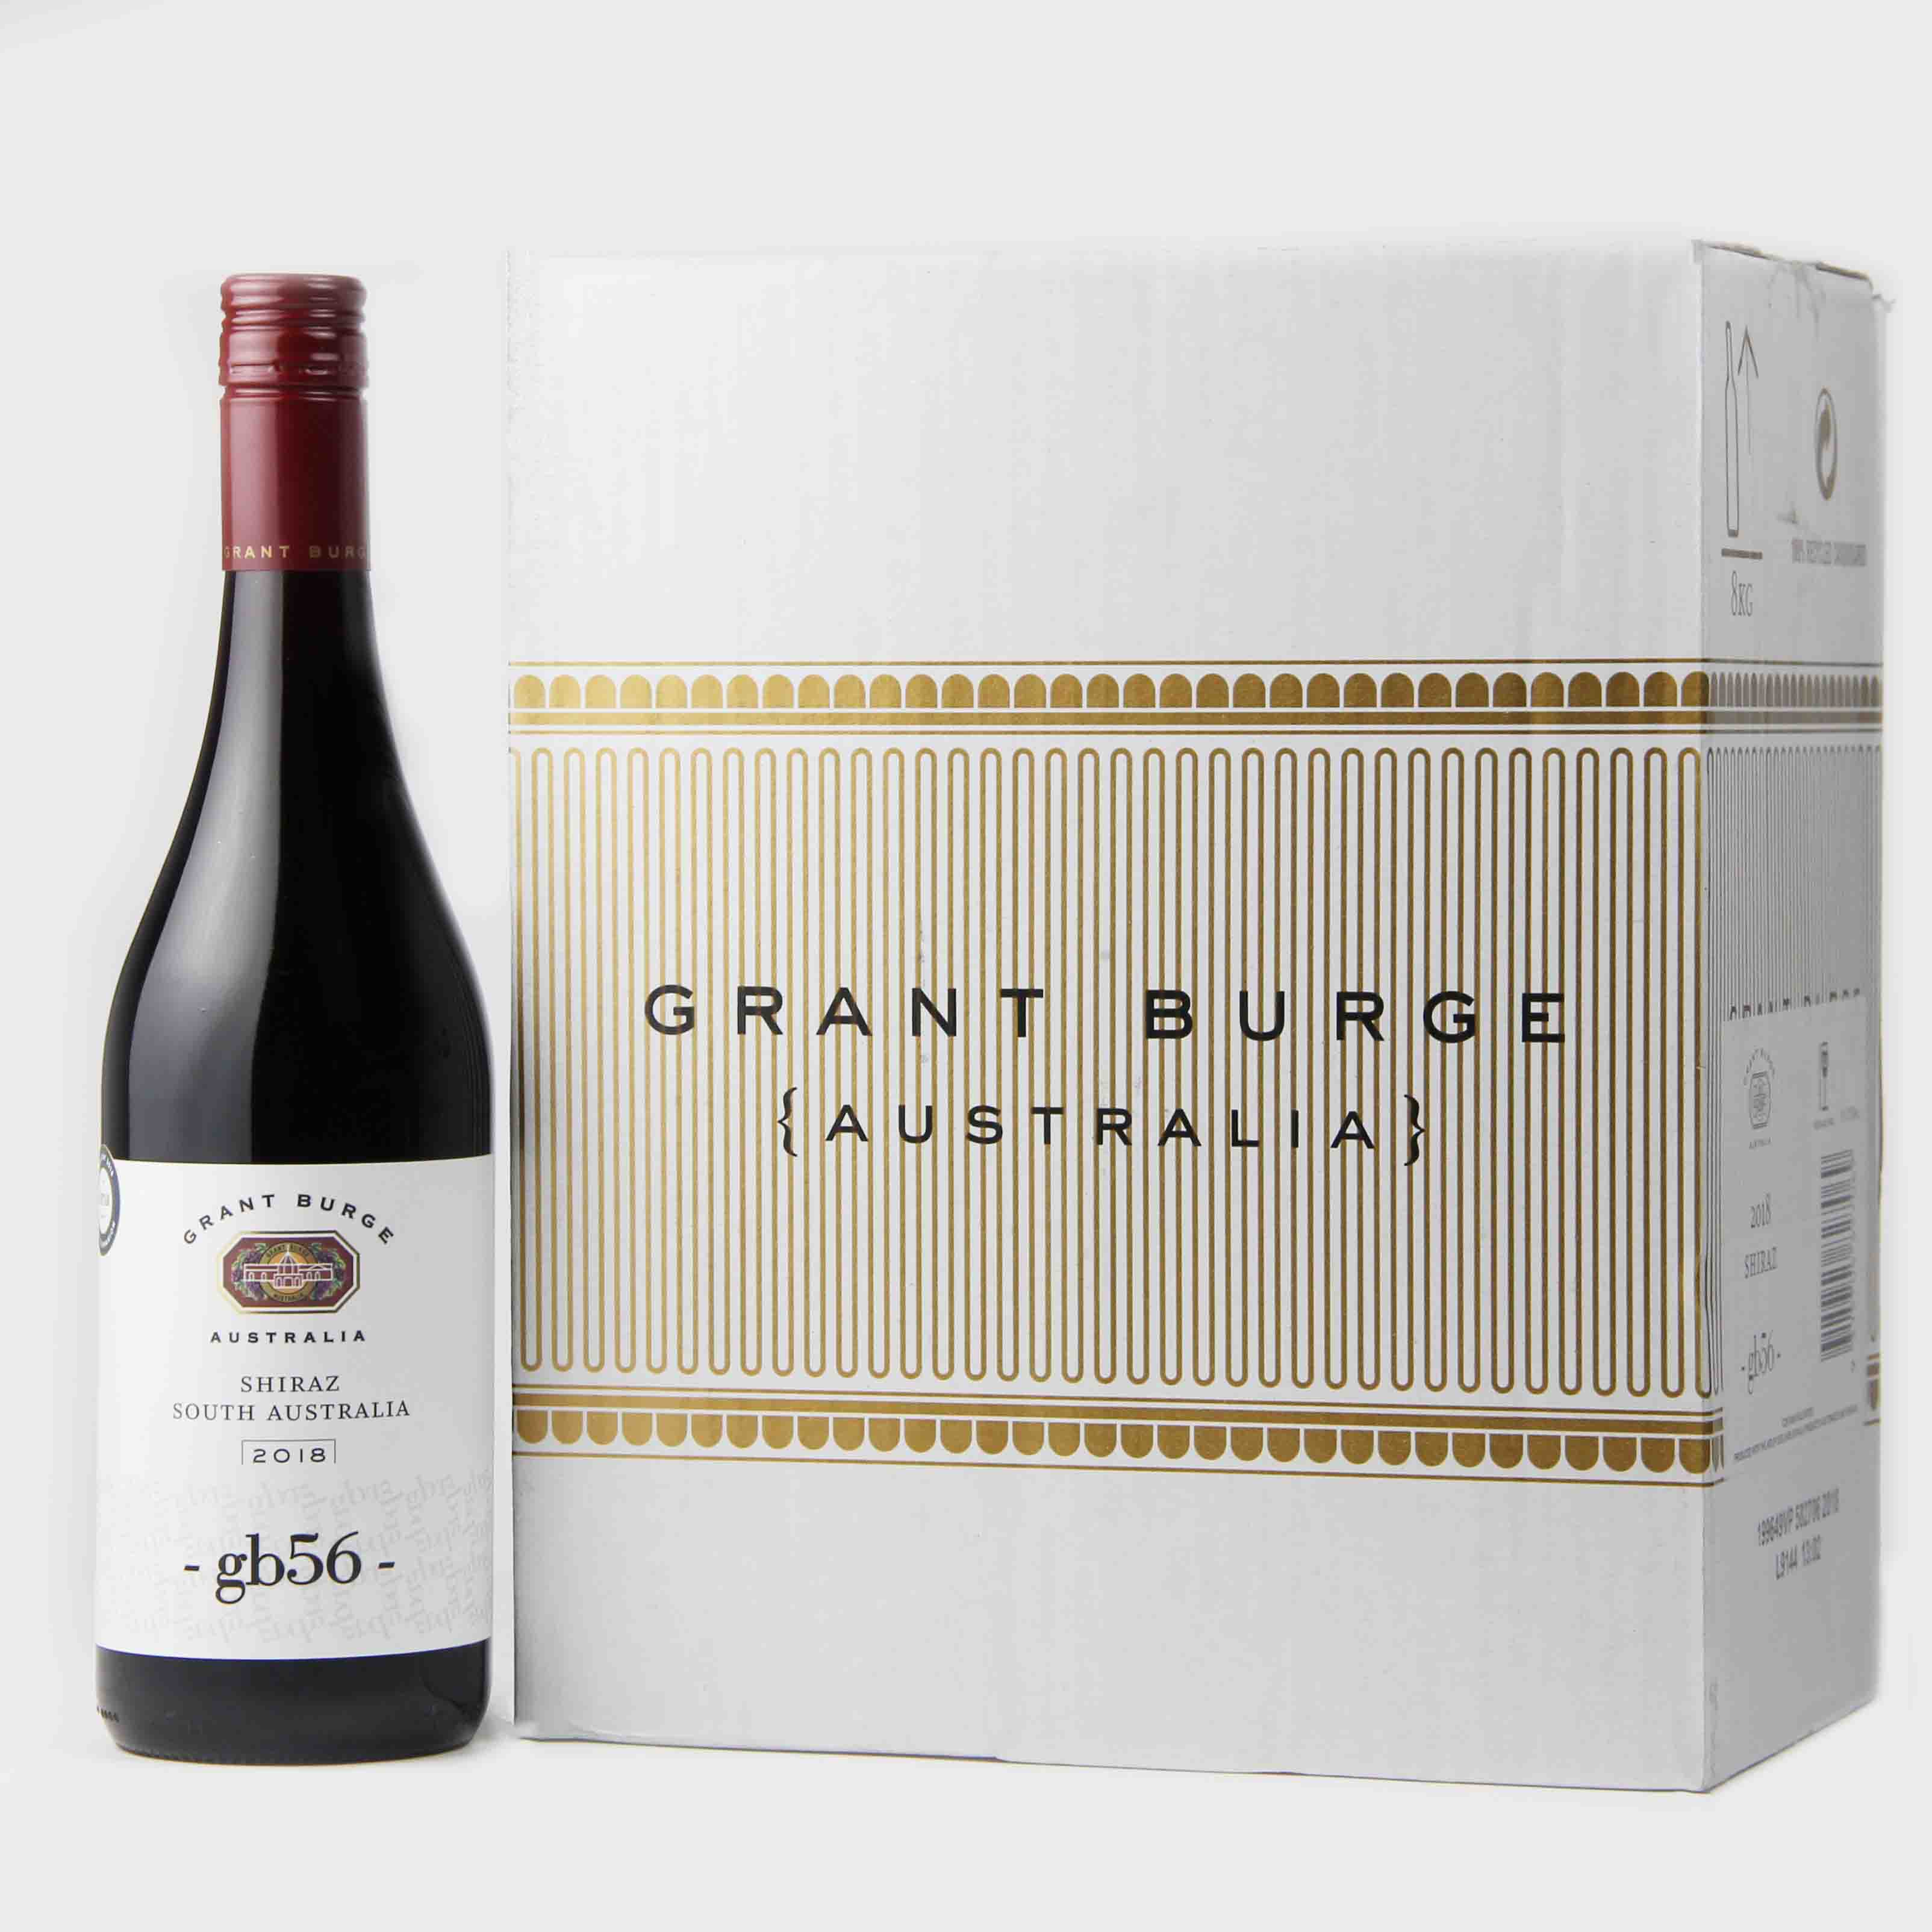 澳大利亚南澳葛兰博gb西拉干红葡萄酒